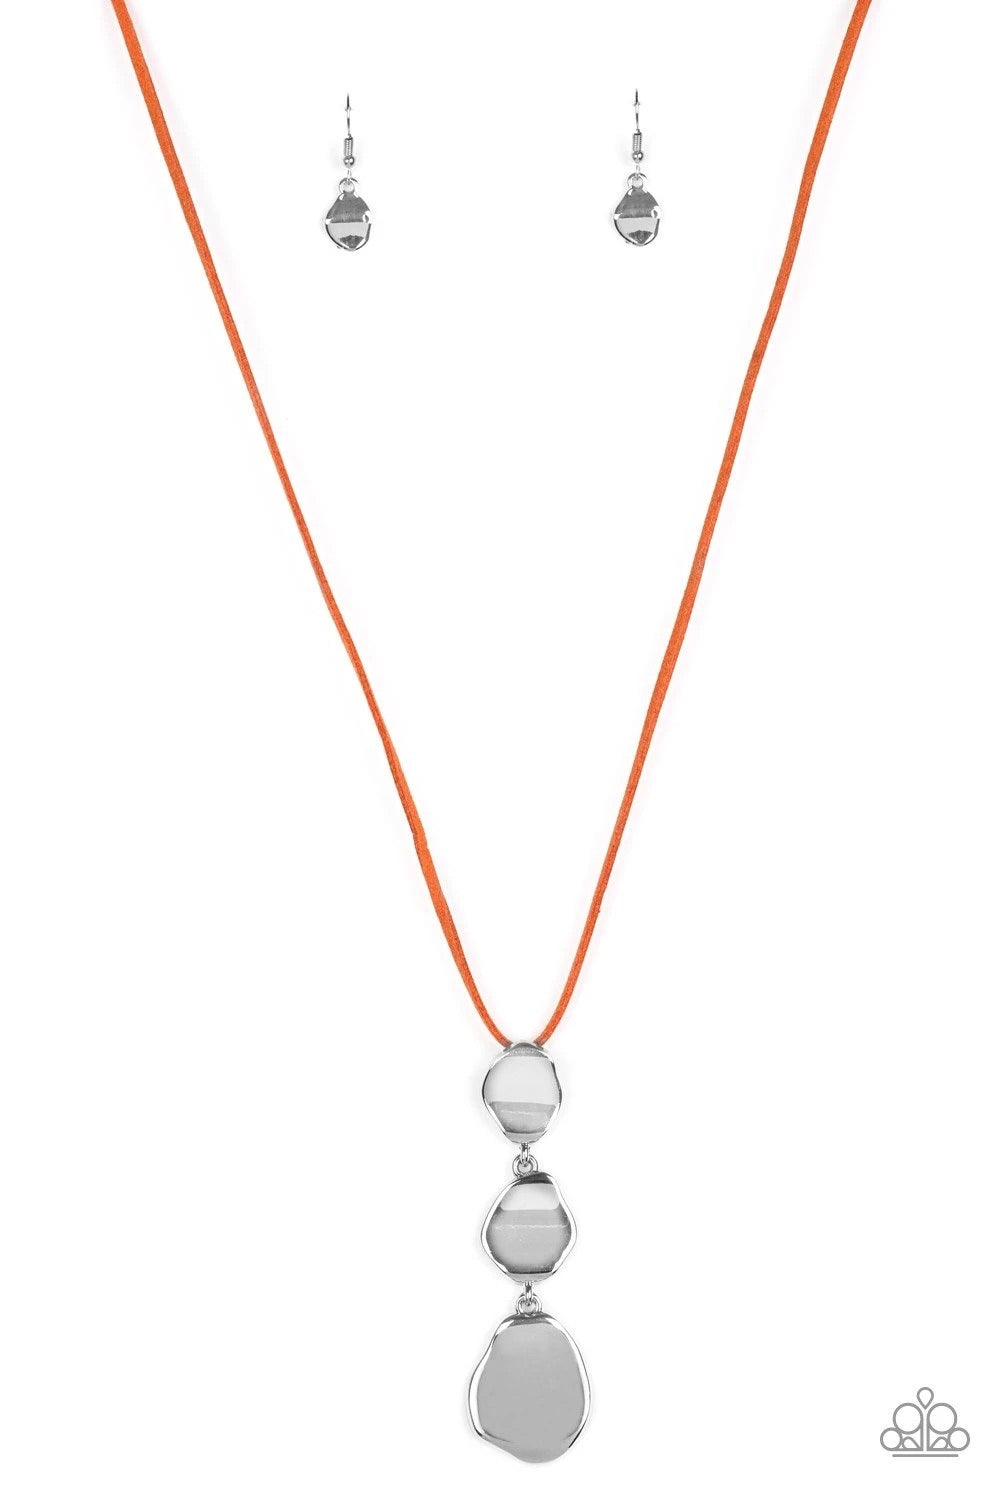 Embrace The Journey - Orange Necklace freeshipping - JewLz4u Gemstone Gallery